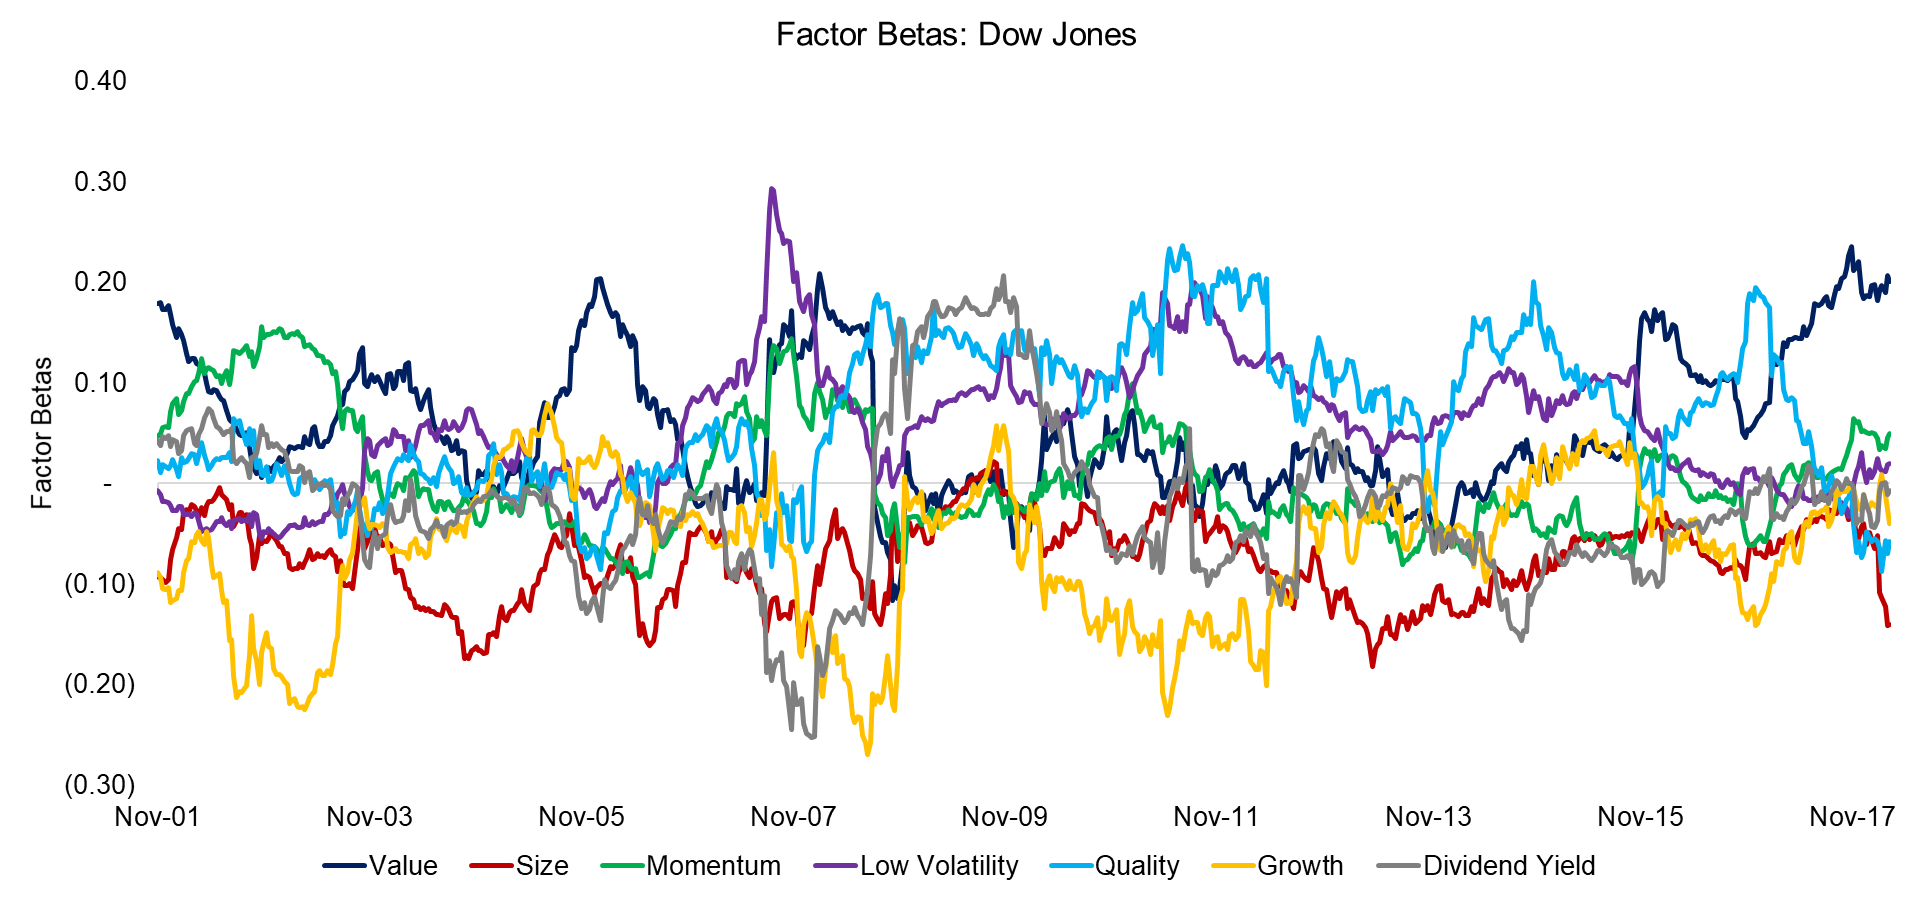 Factor Betas Dow Jones